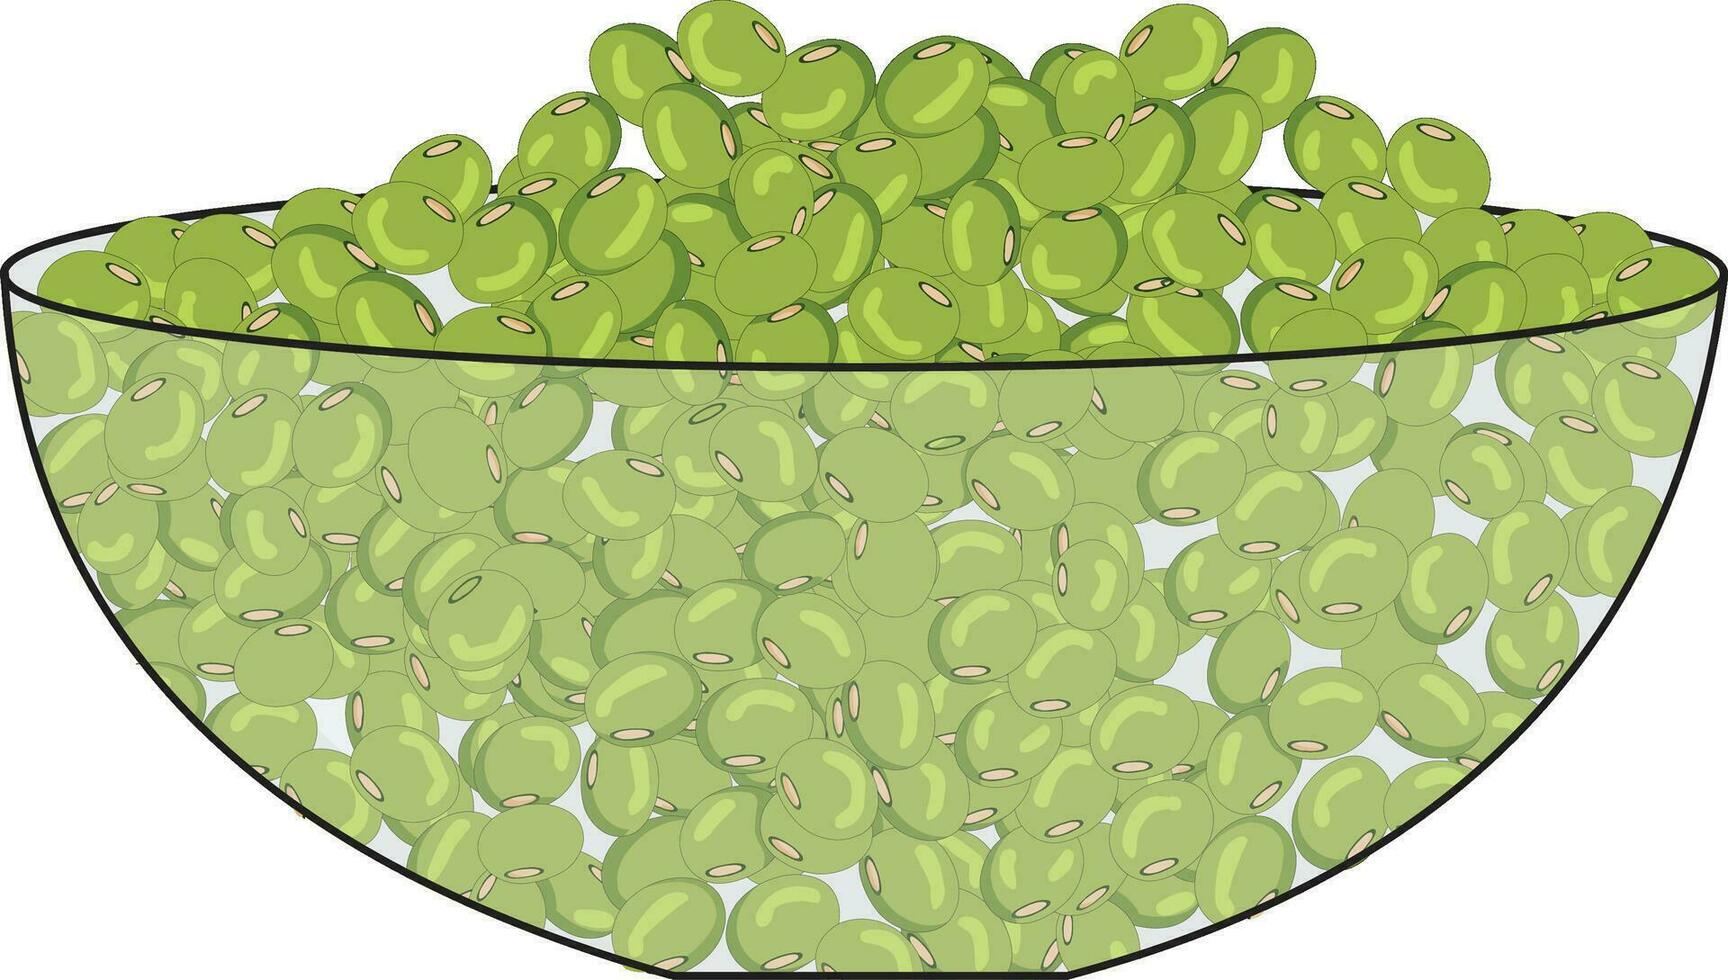 groen gram geplaatst in een kom vector illustratie